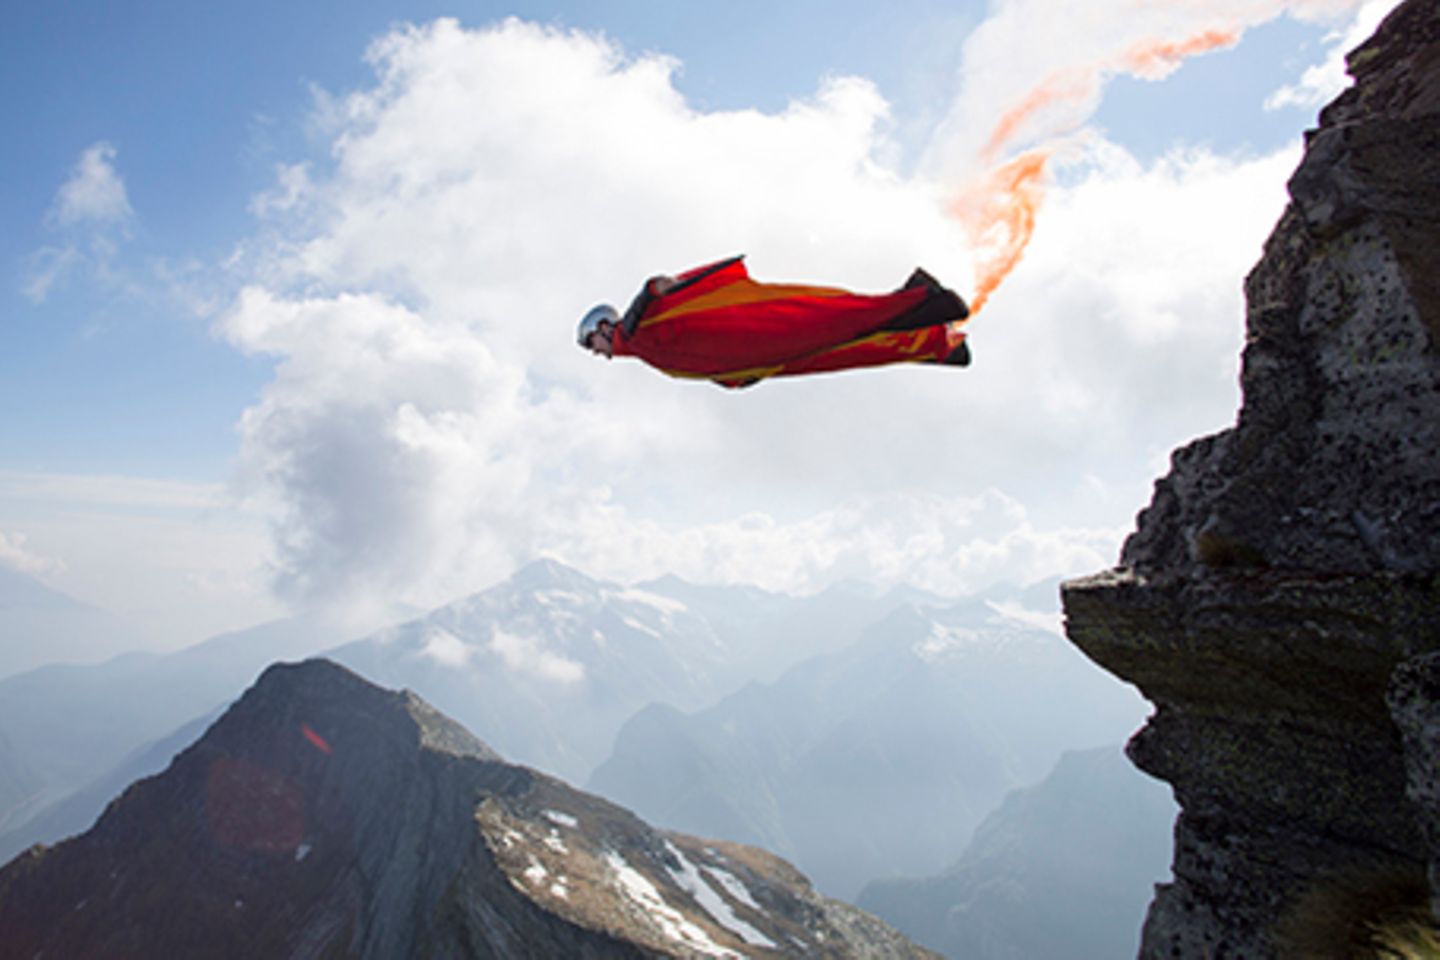 Wingsuit Jumper springt mit rotem Leuchtfeuer von Felsen.